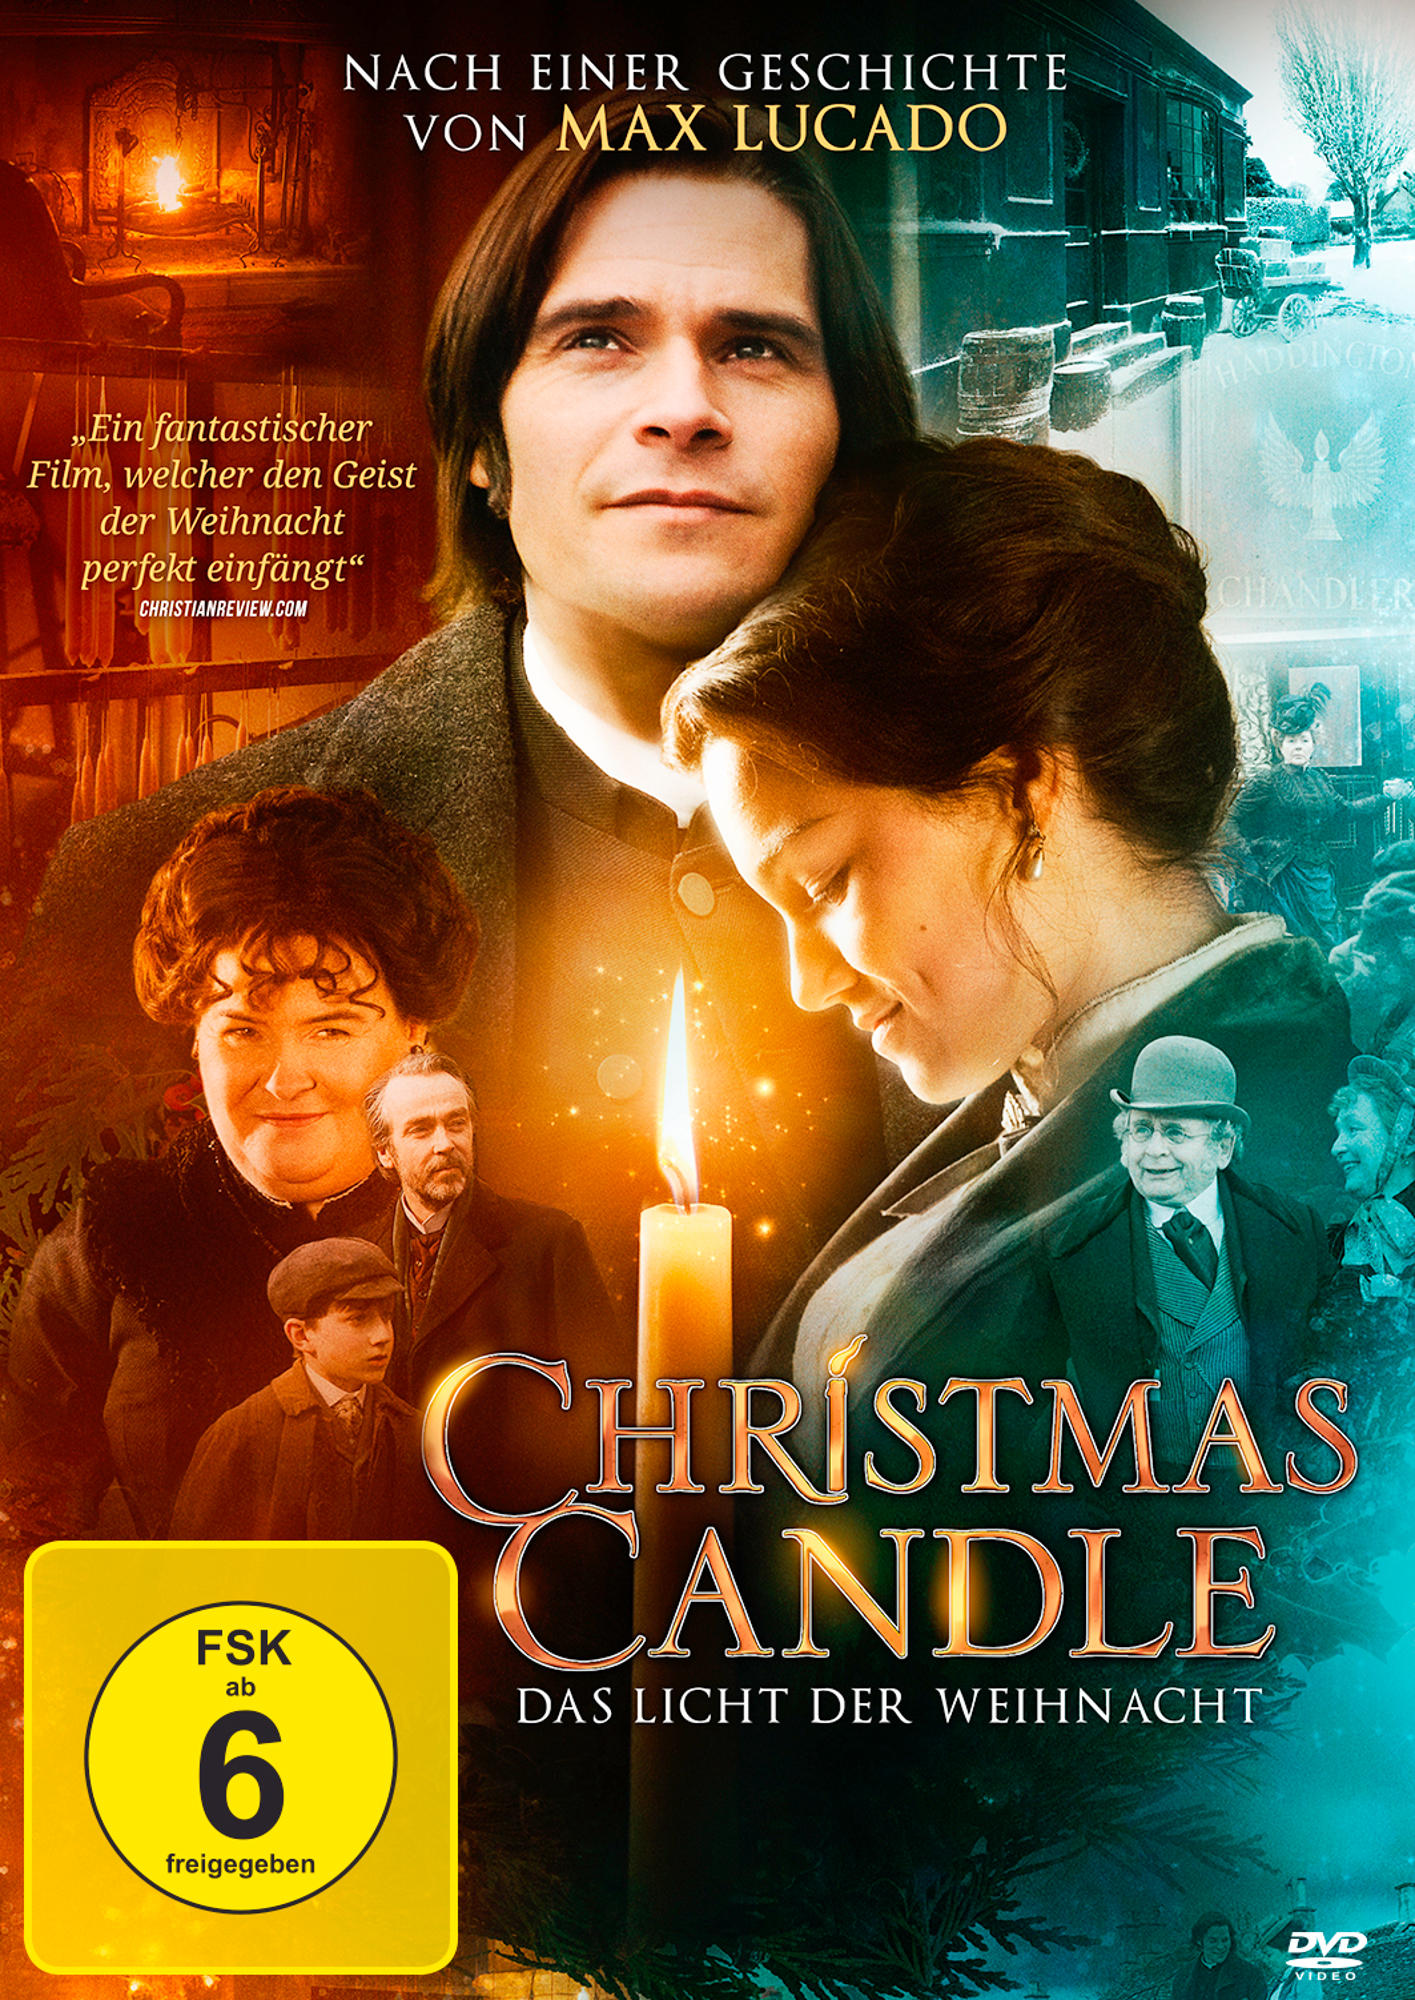 Christmas - Das Candle Licht Weihnachtsnacht der DVD